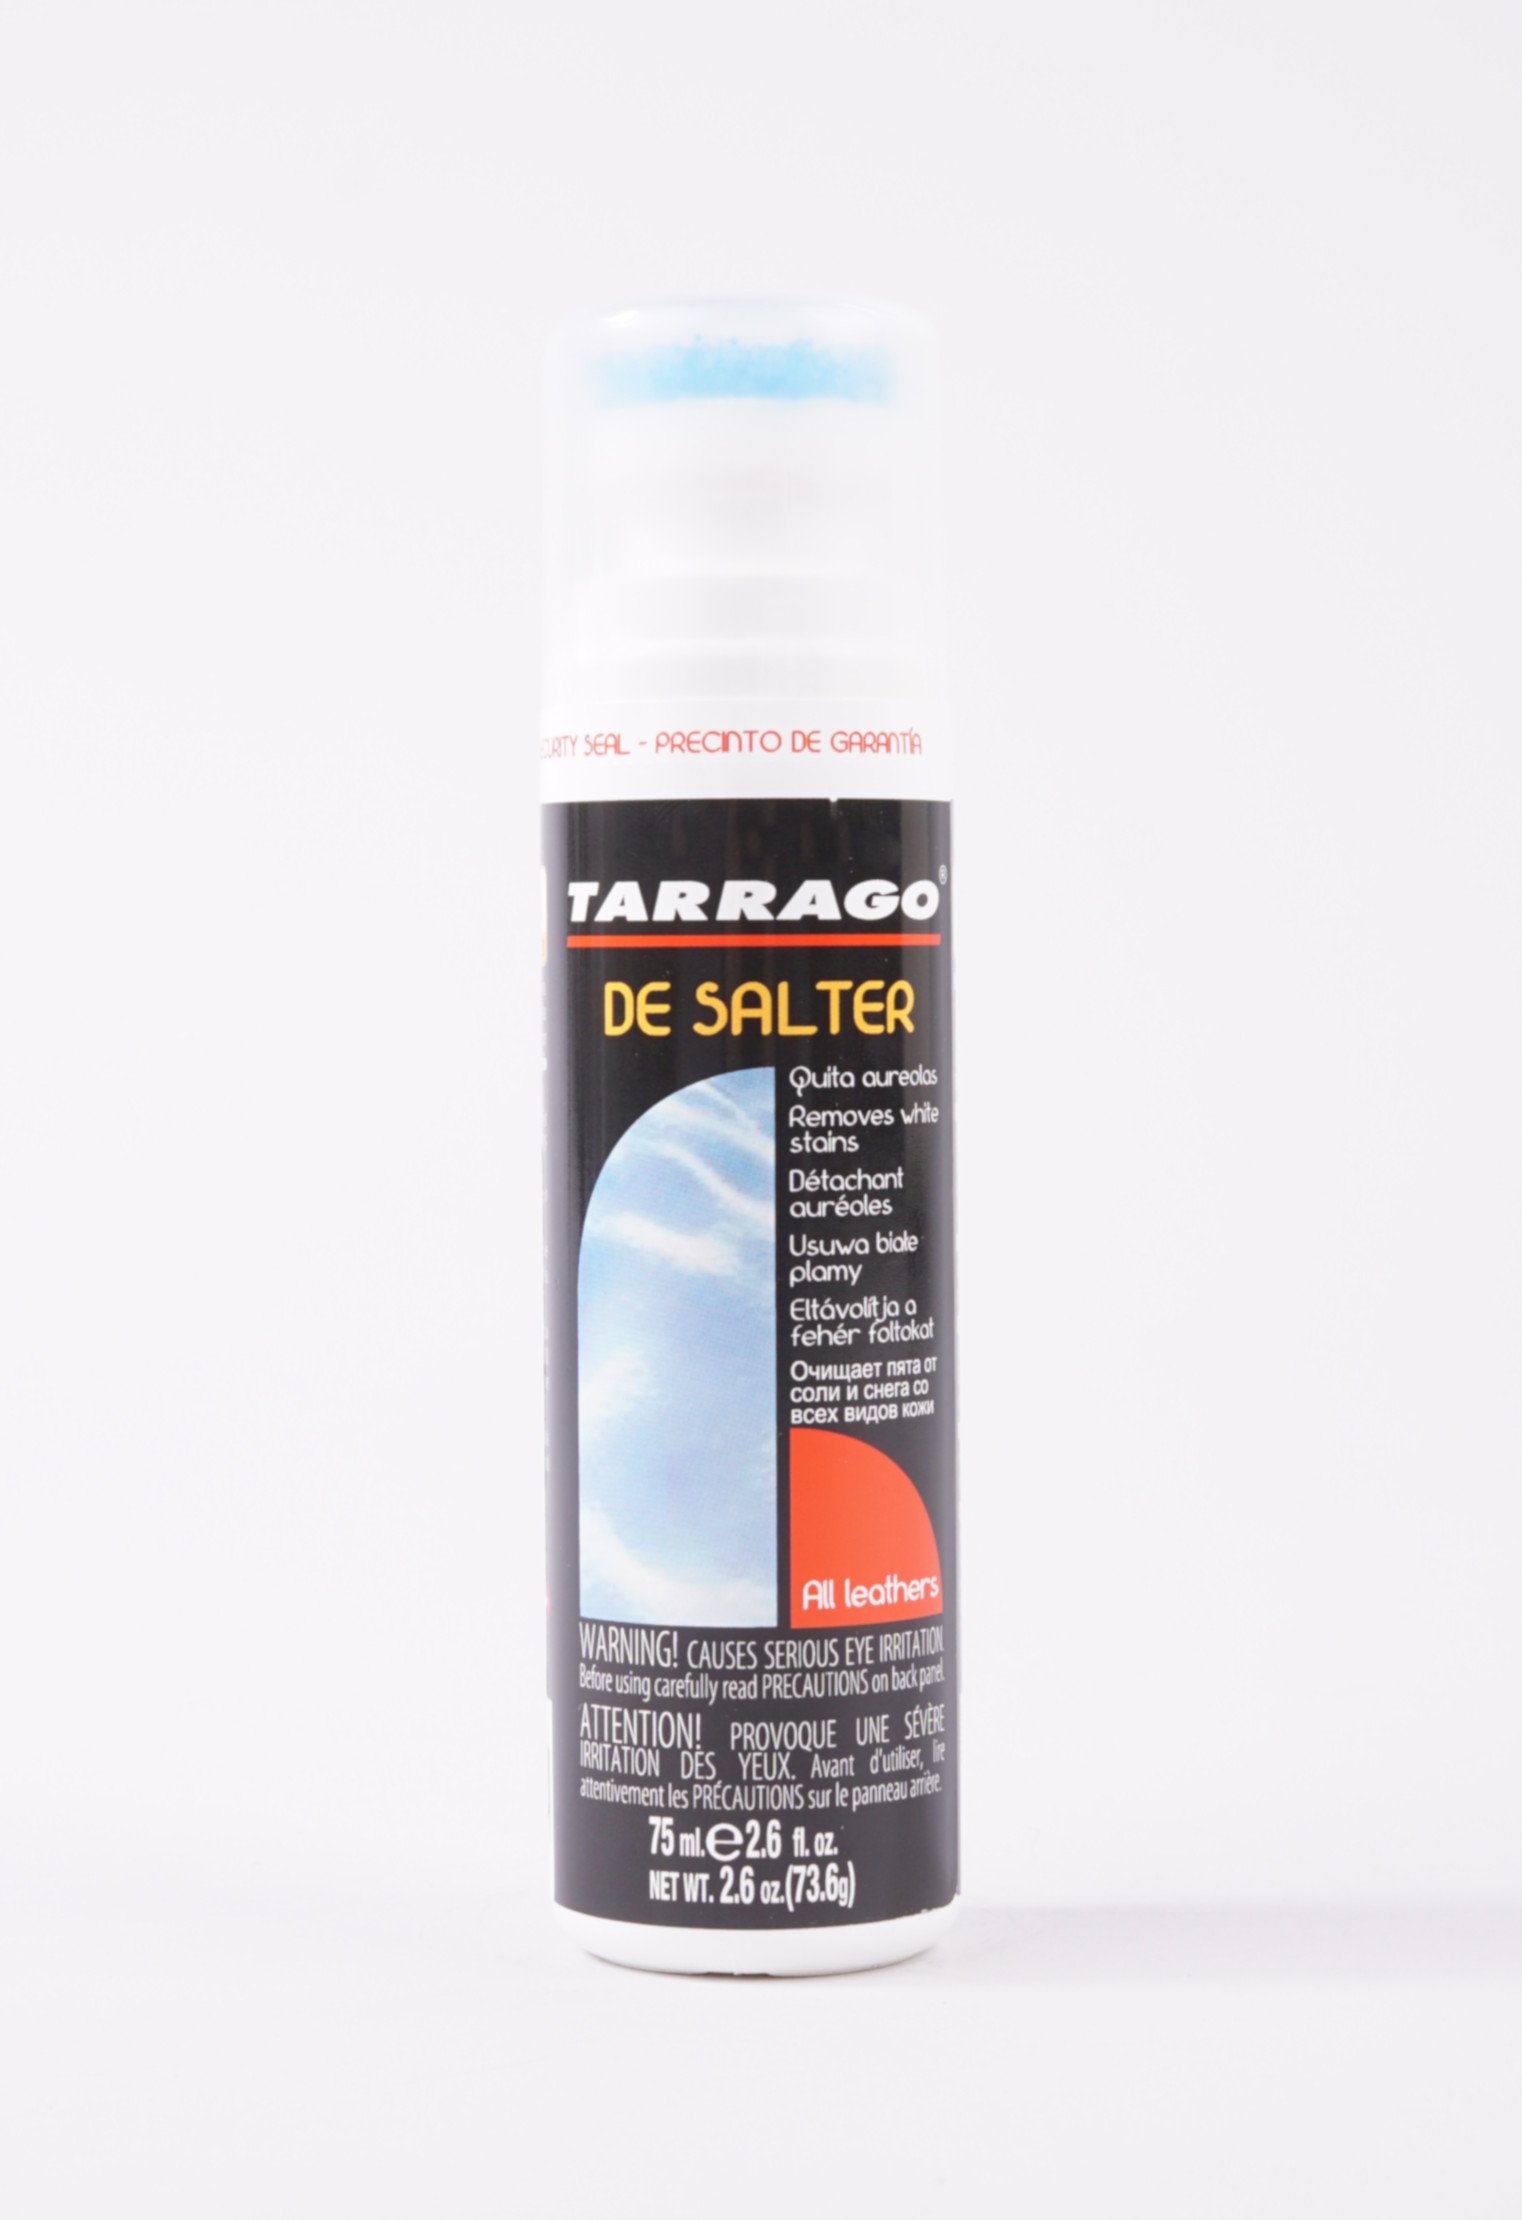 Шампуни и очистители 20-1205 TARRAGO - Очиститель от соли DE SALTER, флакон, 75мл очиститель для нубука tarrago nubuck cleaner 75мл